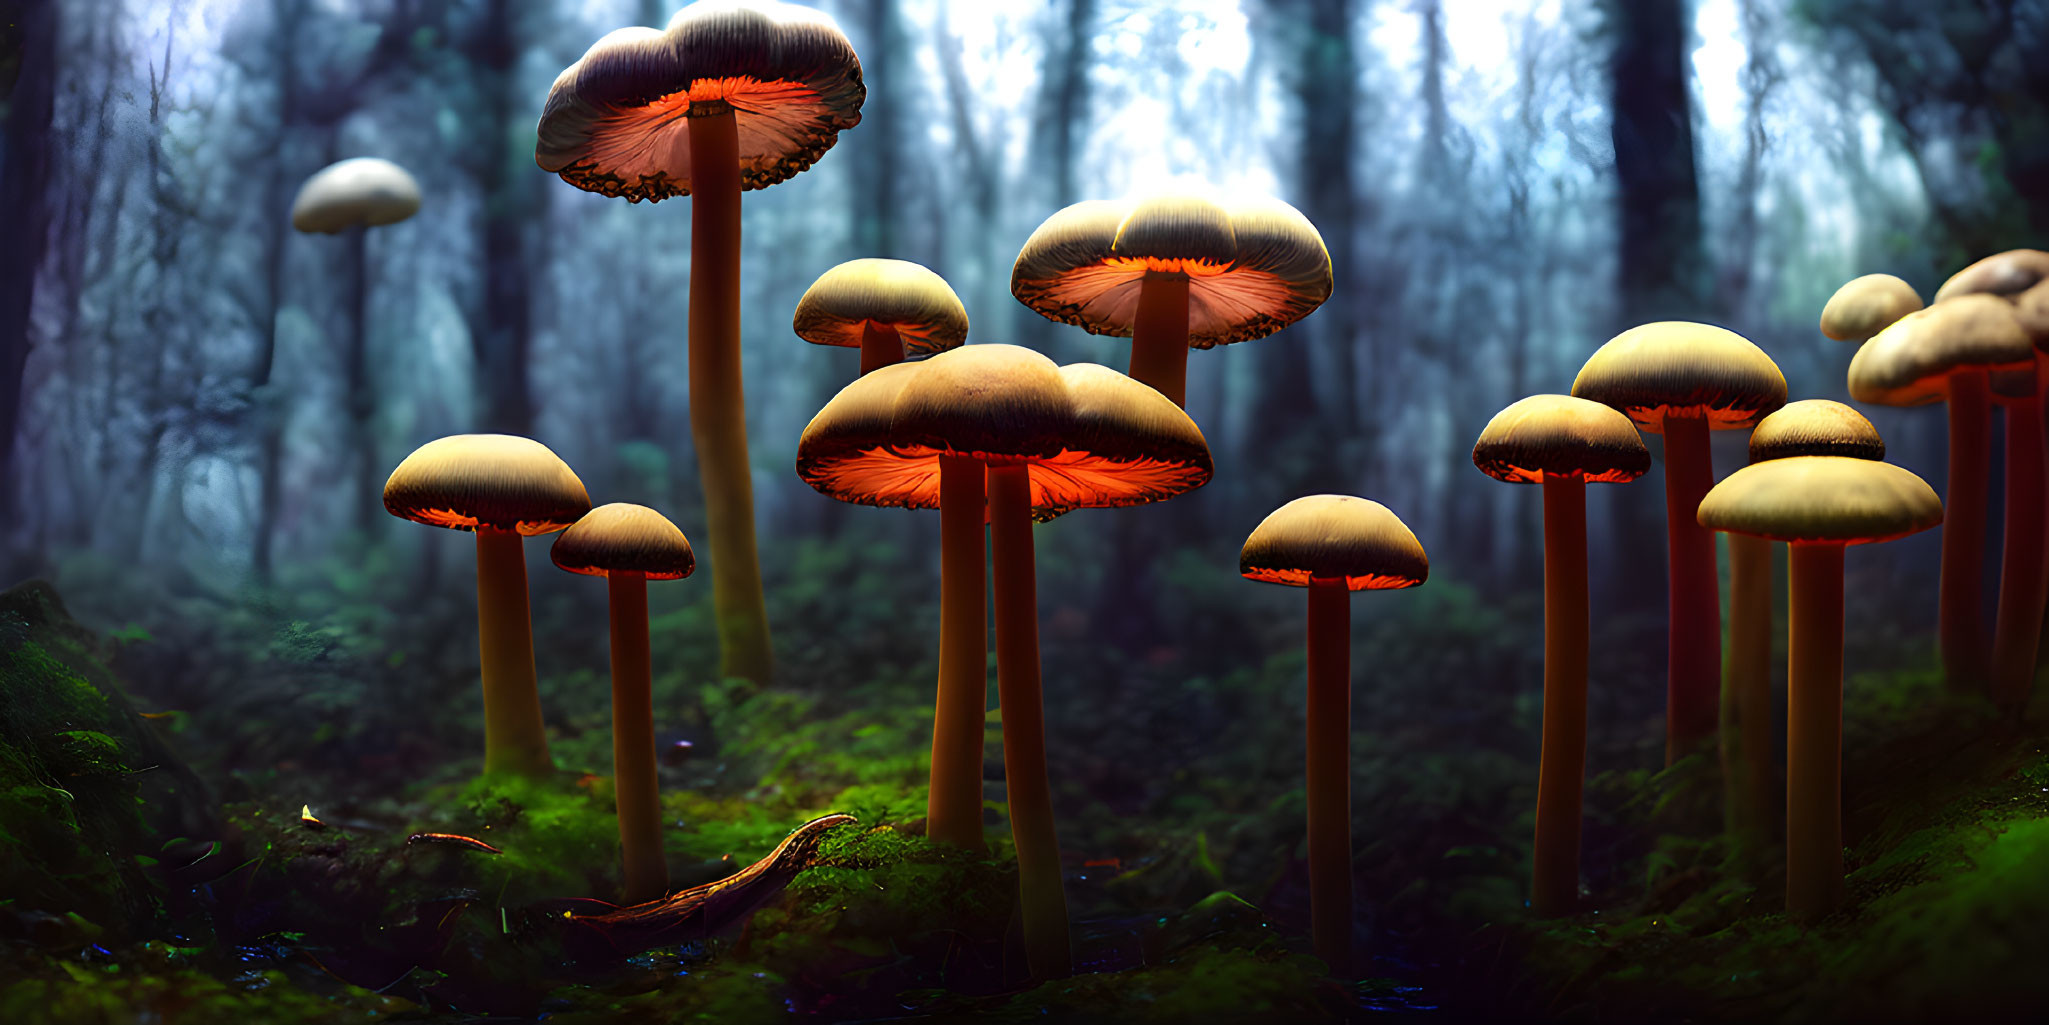 Luminous mushrooms with orange undersides in mystical forest